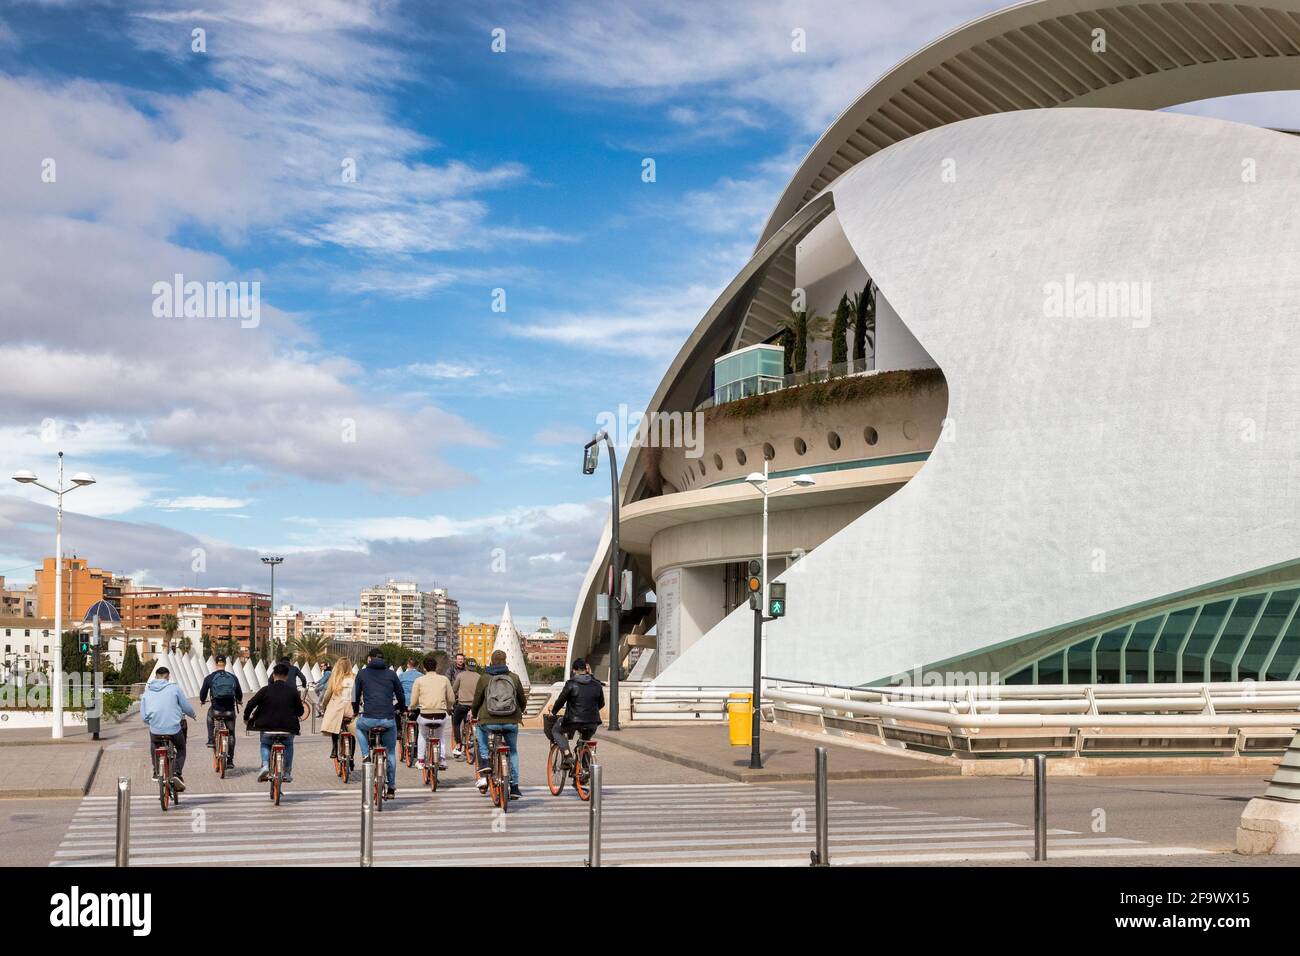 3 Mars 2020: Valence, Espagne - touristes sur un tour en vélo passant le Palau de les Arts Reina Sofia ou Palais de la Reine Sofía des Arts, une salle de concert a Banque D'Images